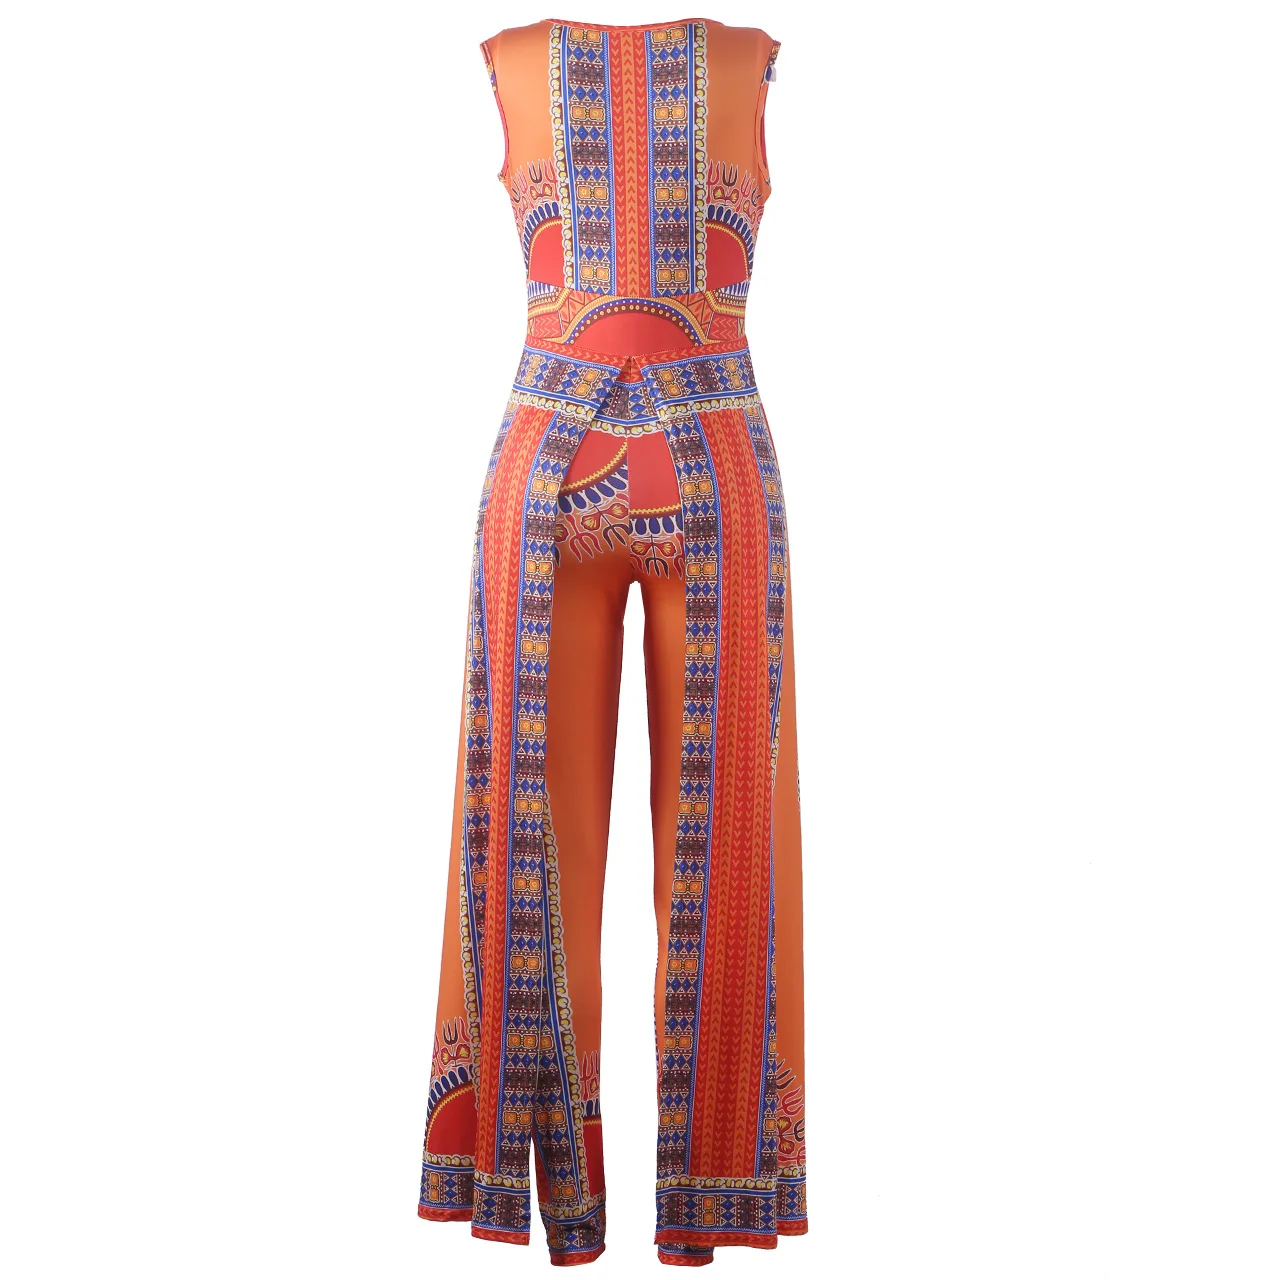 Африканские платья для женщин Взрывные Модели осень позиционирования печати оранжевые штаны в стиле этно